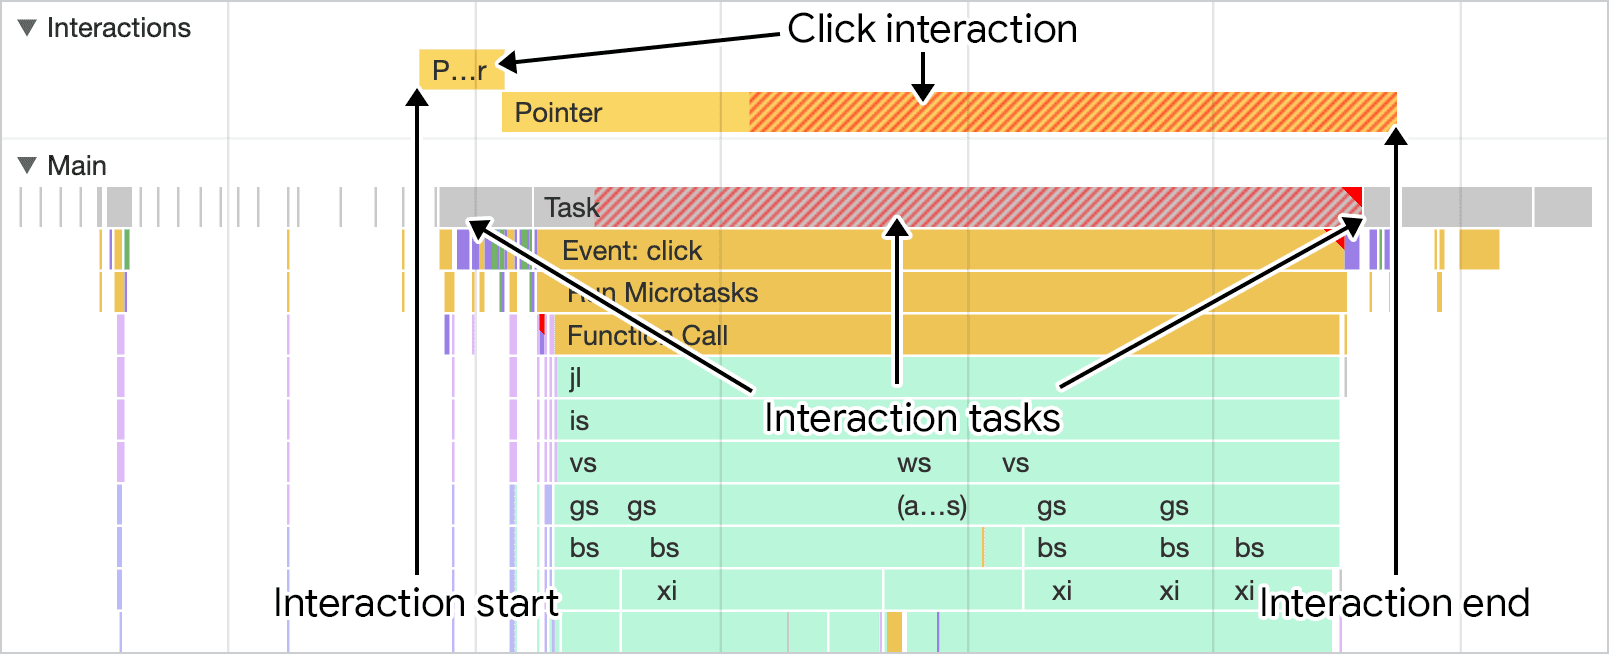 צילום מסך של אינטראקציה, כפי שמוצג בחלונית הביצועים של כלי הפיתוח ל-Chrome. מסלול אינטראקציות מעל ה-thread הראשי מראה את משך האינטראקציה, שאפשר להתאים לפעילות ב-thread הראשי.